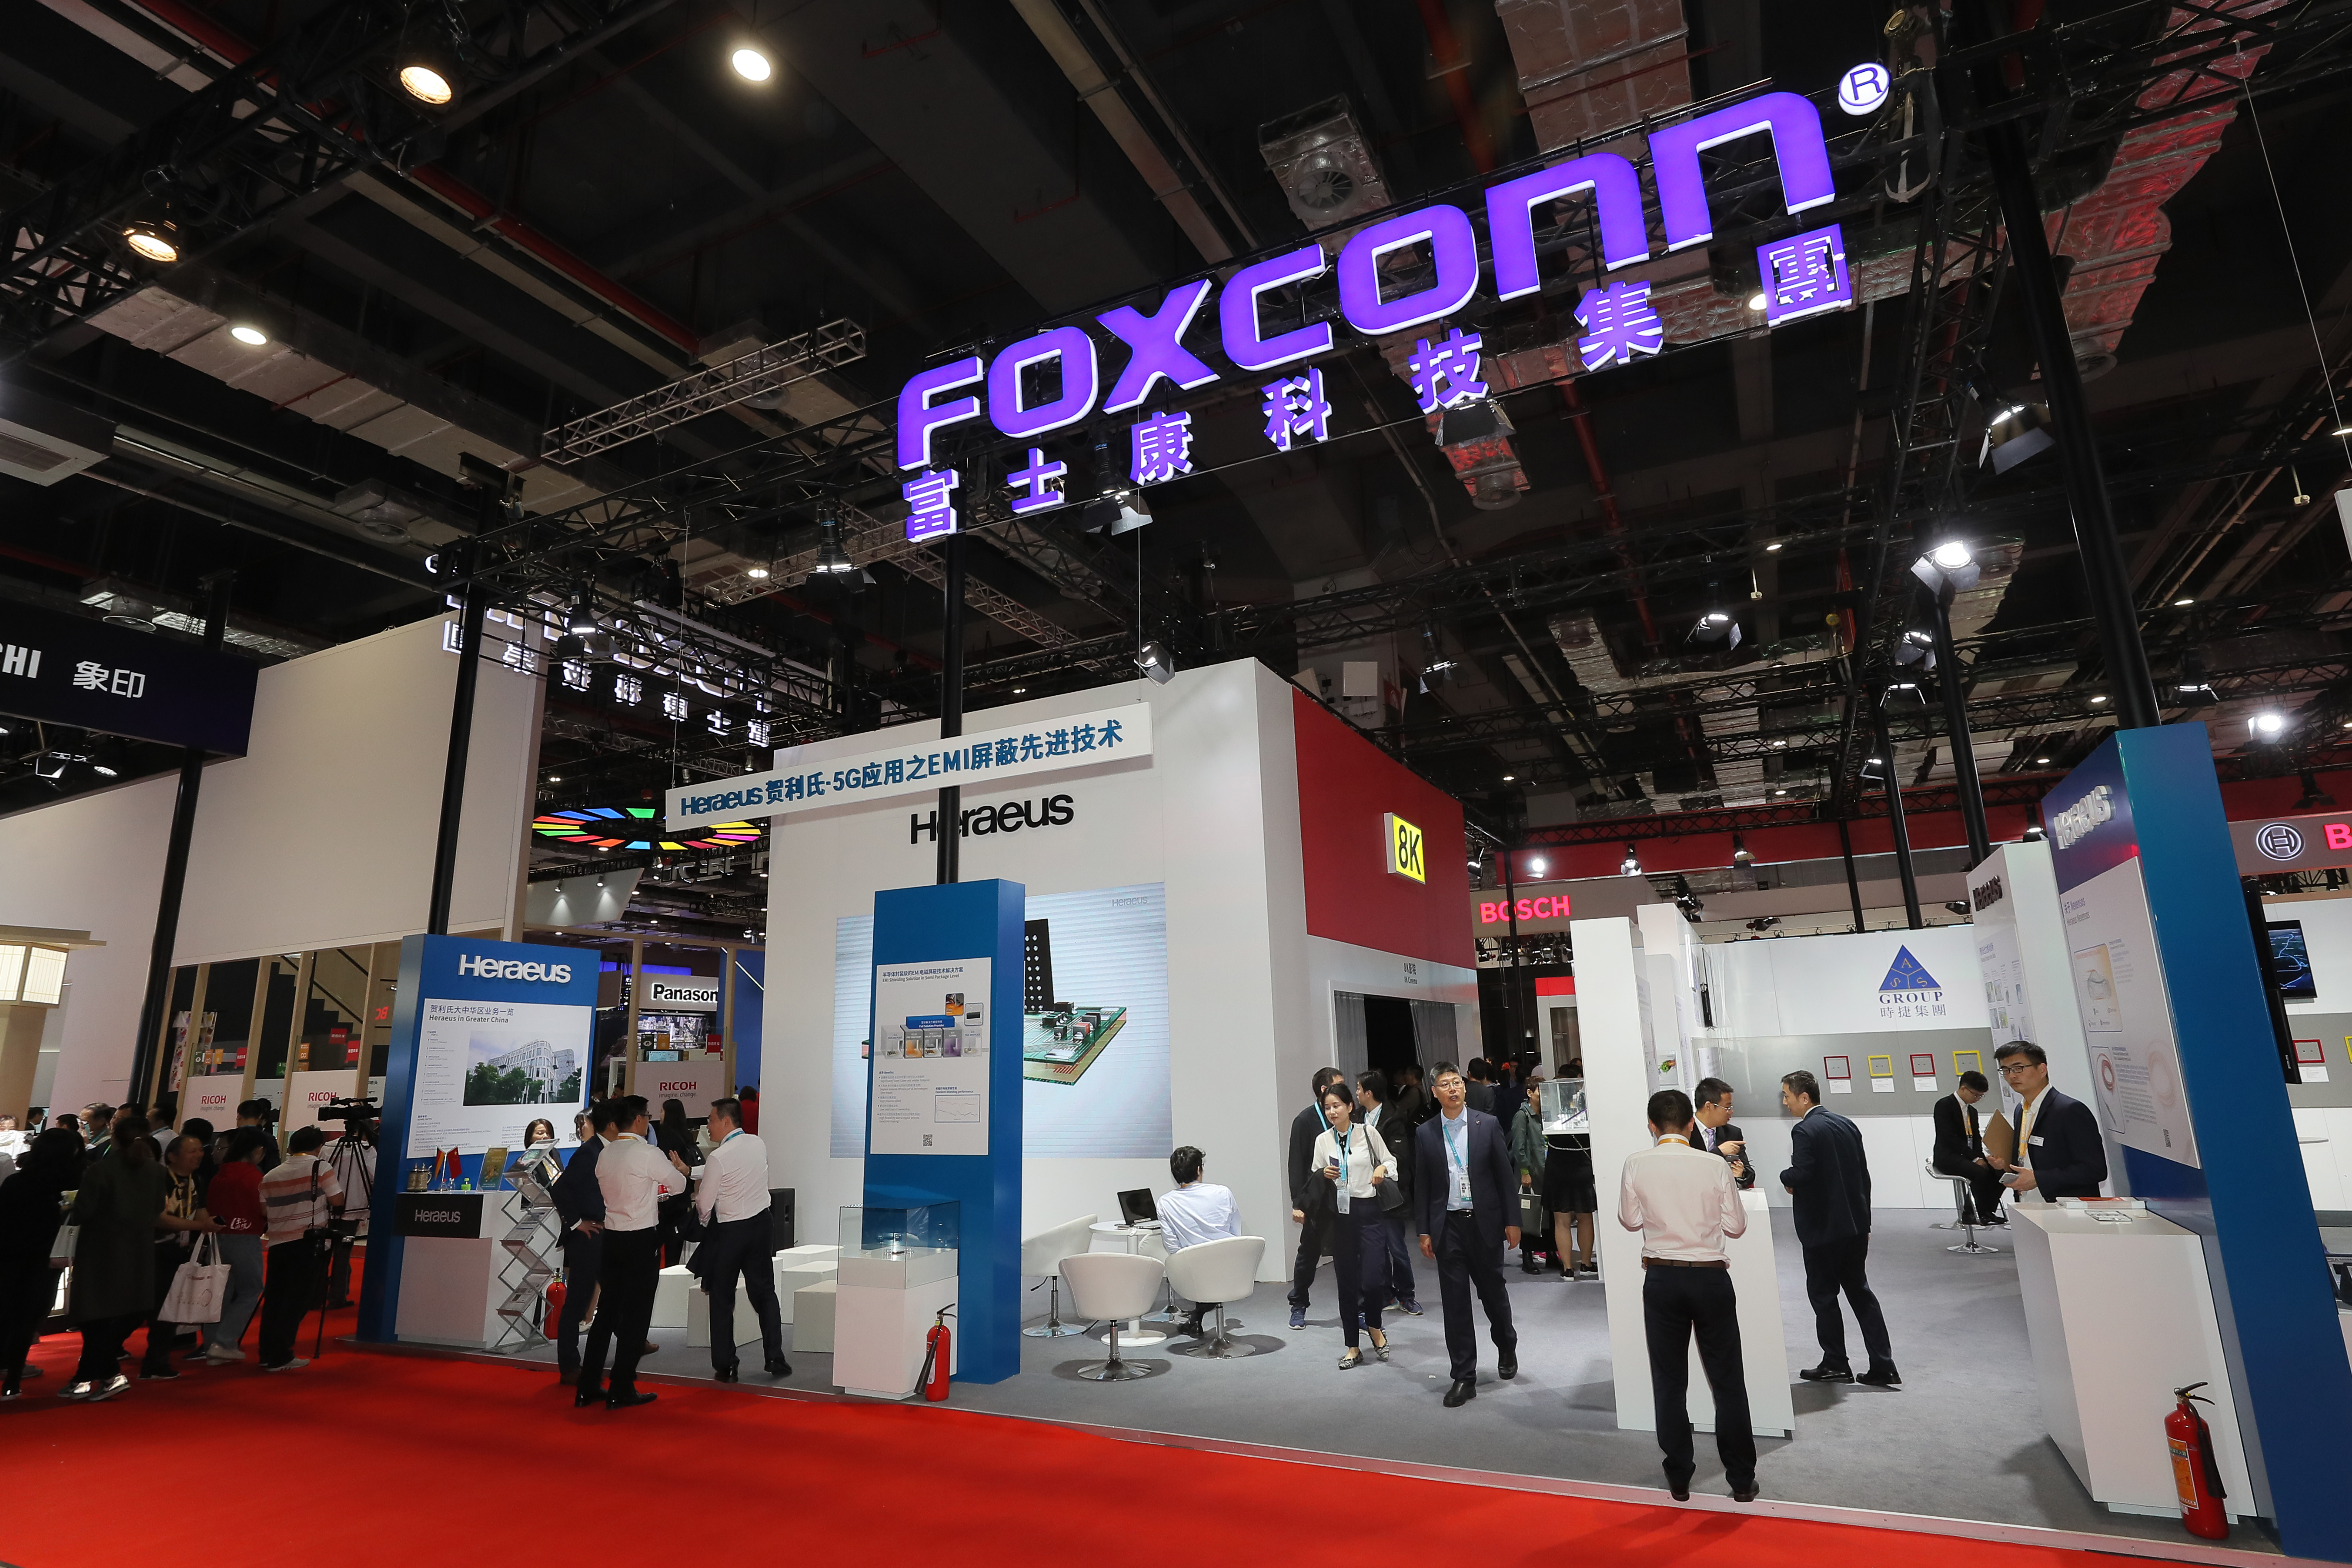 iPhone üreticisi Foxconn, Shenzhen’deki çalışanlarına işe gelmeyin dedi